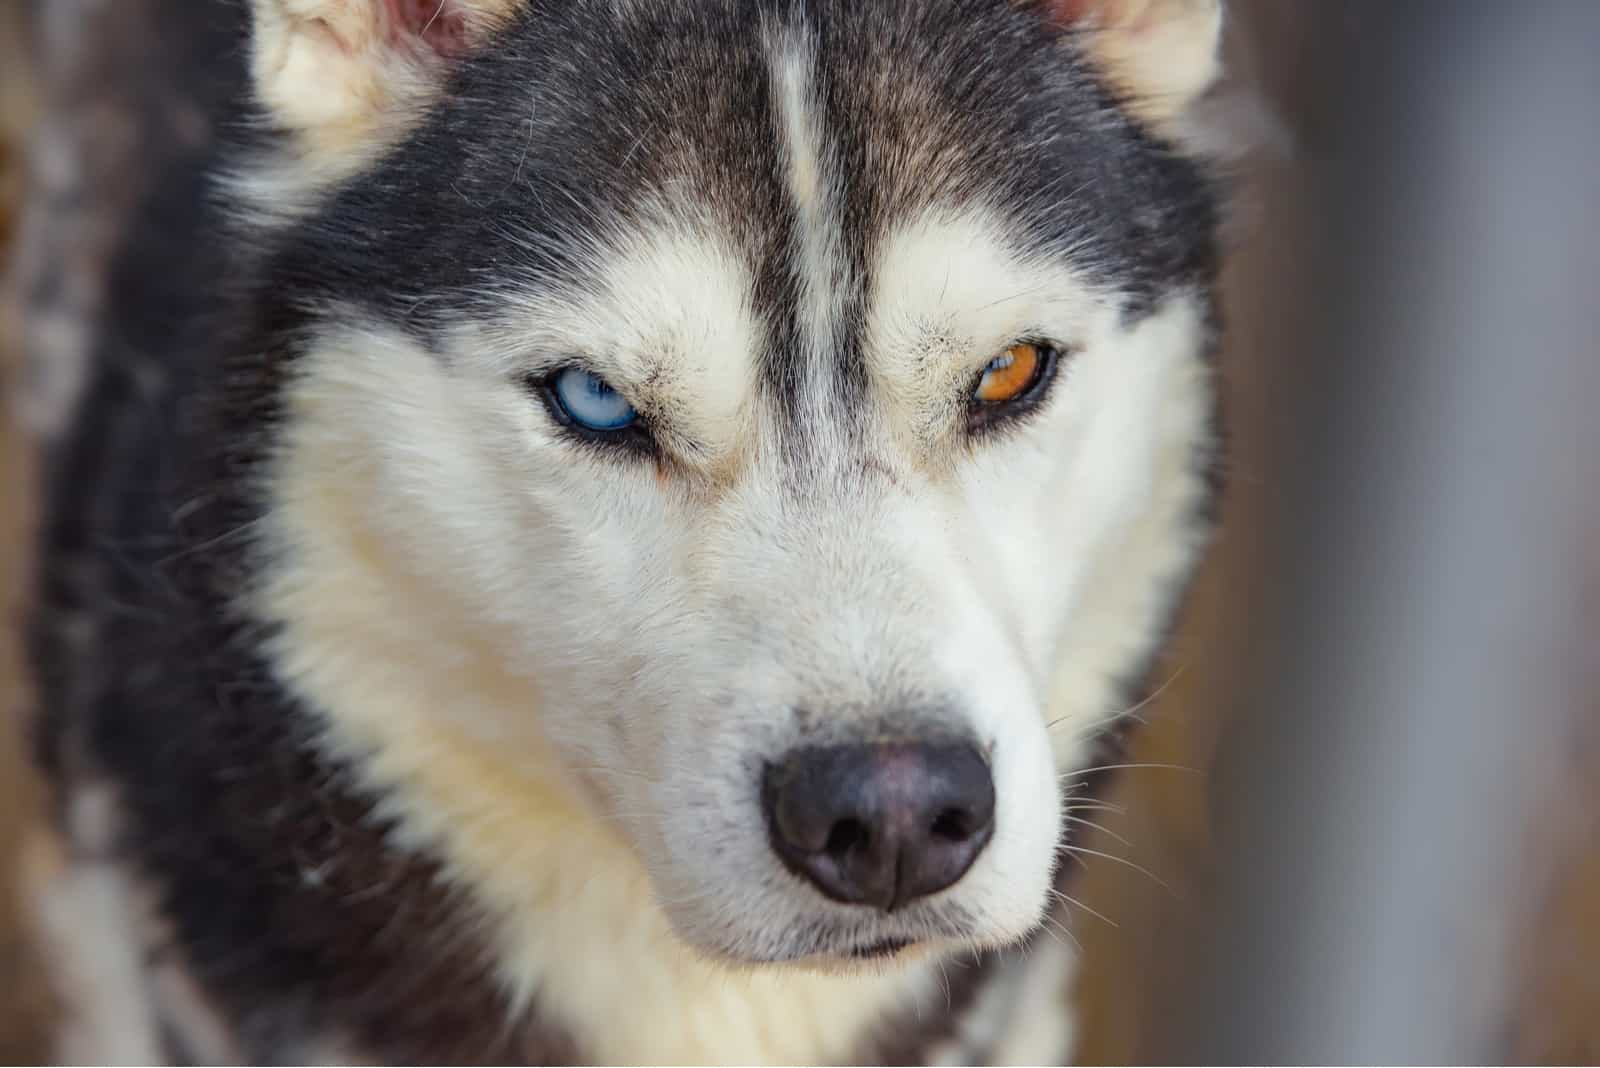 Unusual eye heterochromia on husky dog